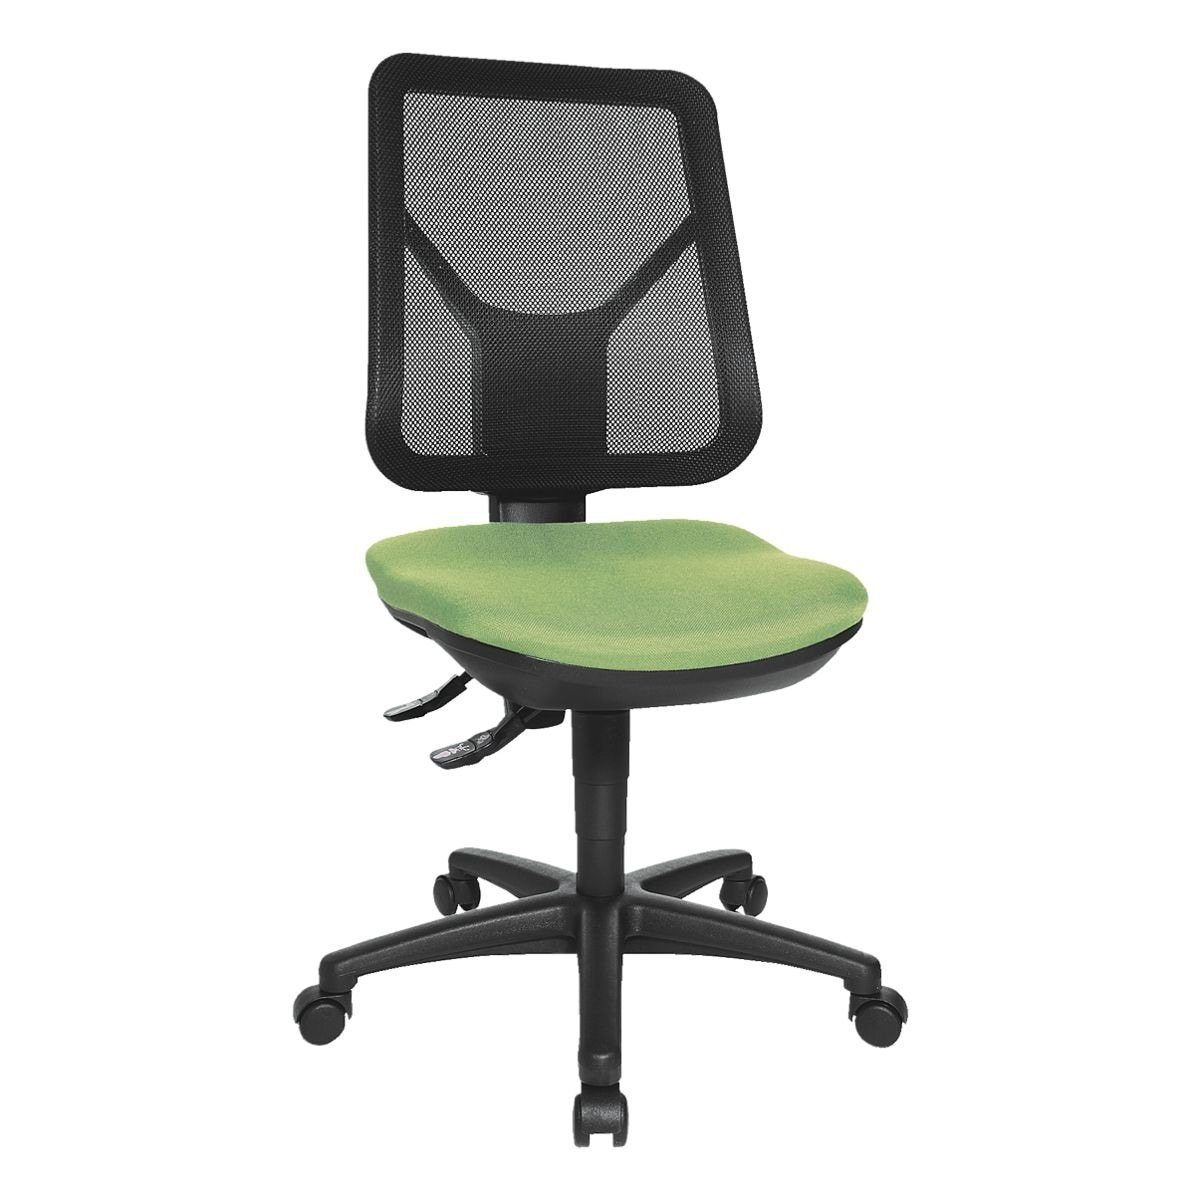 Armlehnen) TOPSTAR Schreibtischstuhl Bandscheibensitz, Ergo mit Net, grün (ohne